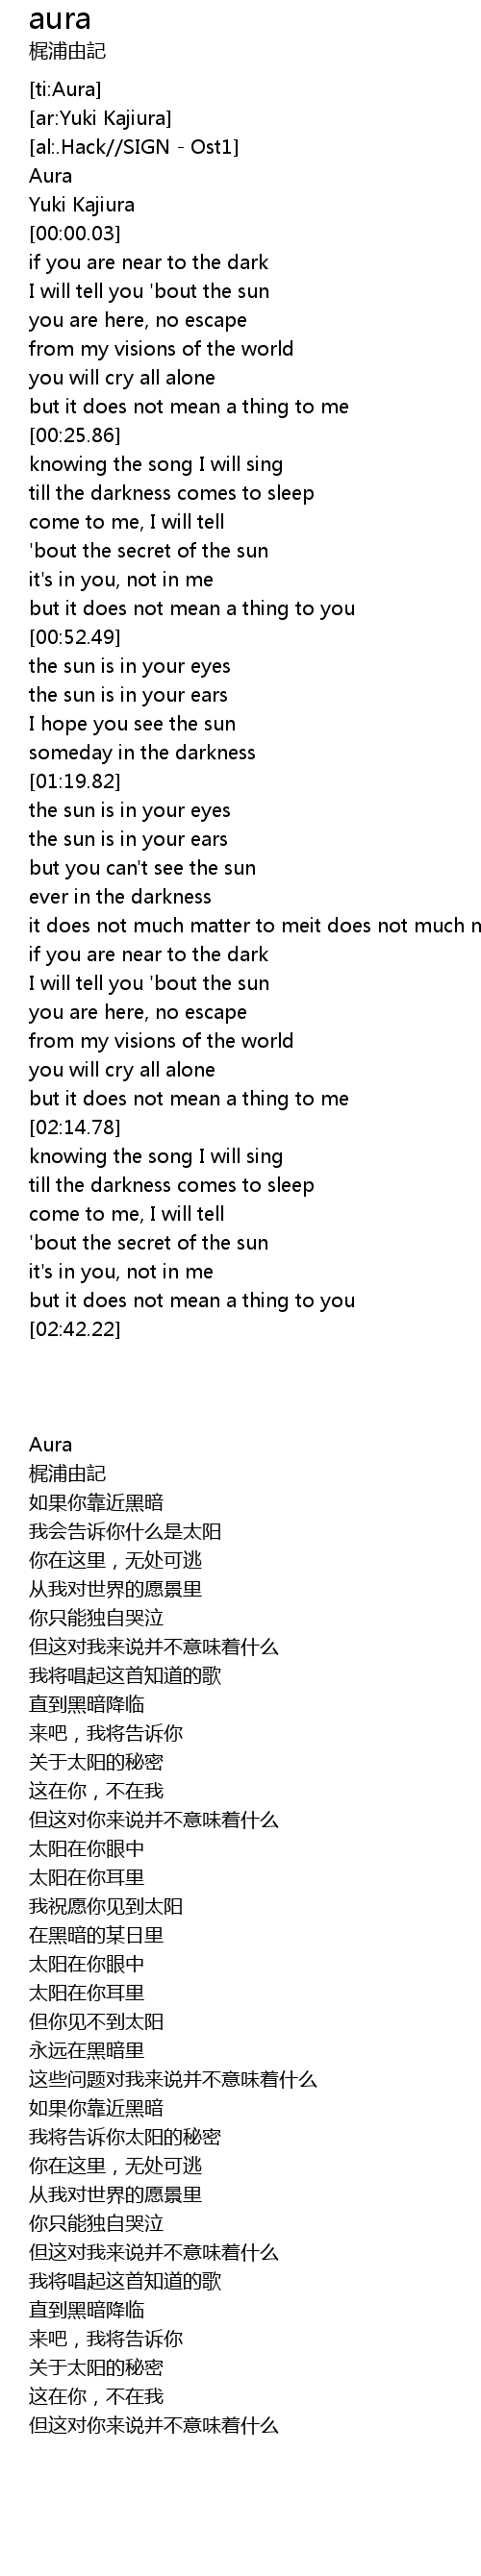 Aura Lyrics Follow Lyrics